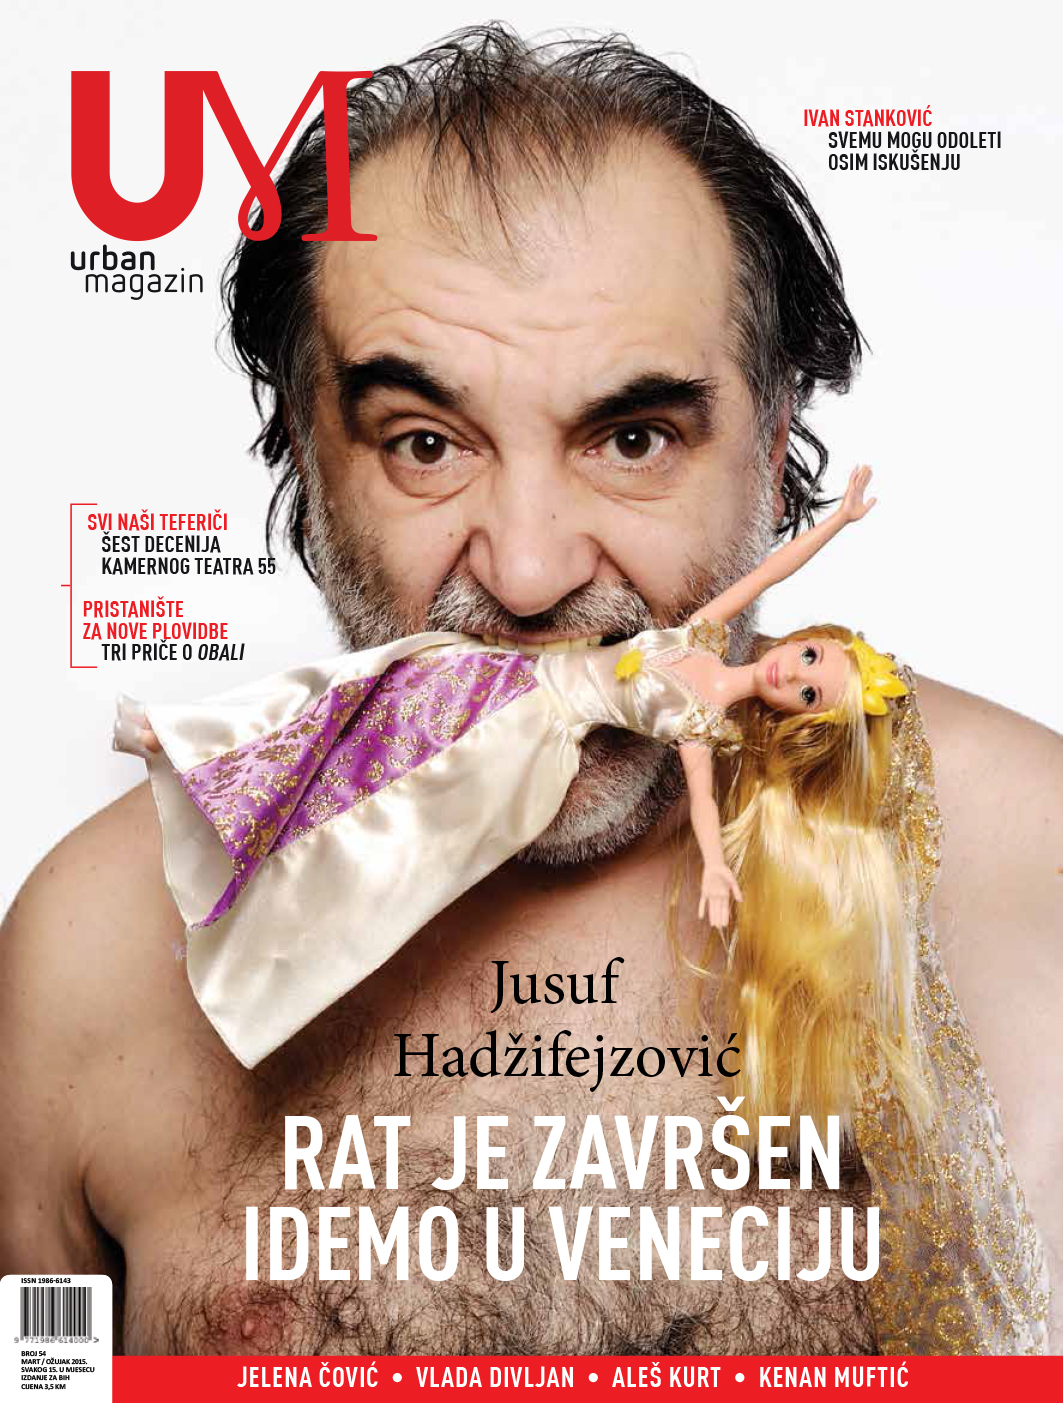 Jusuf Hadzifejzovic, Urban magazine